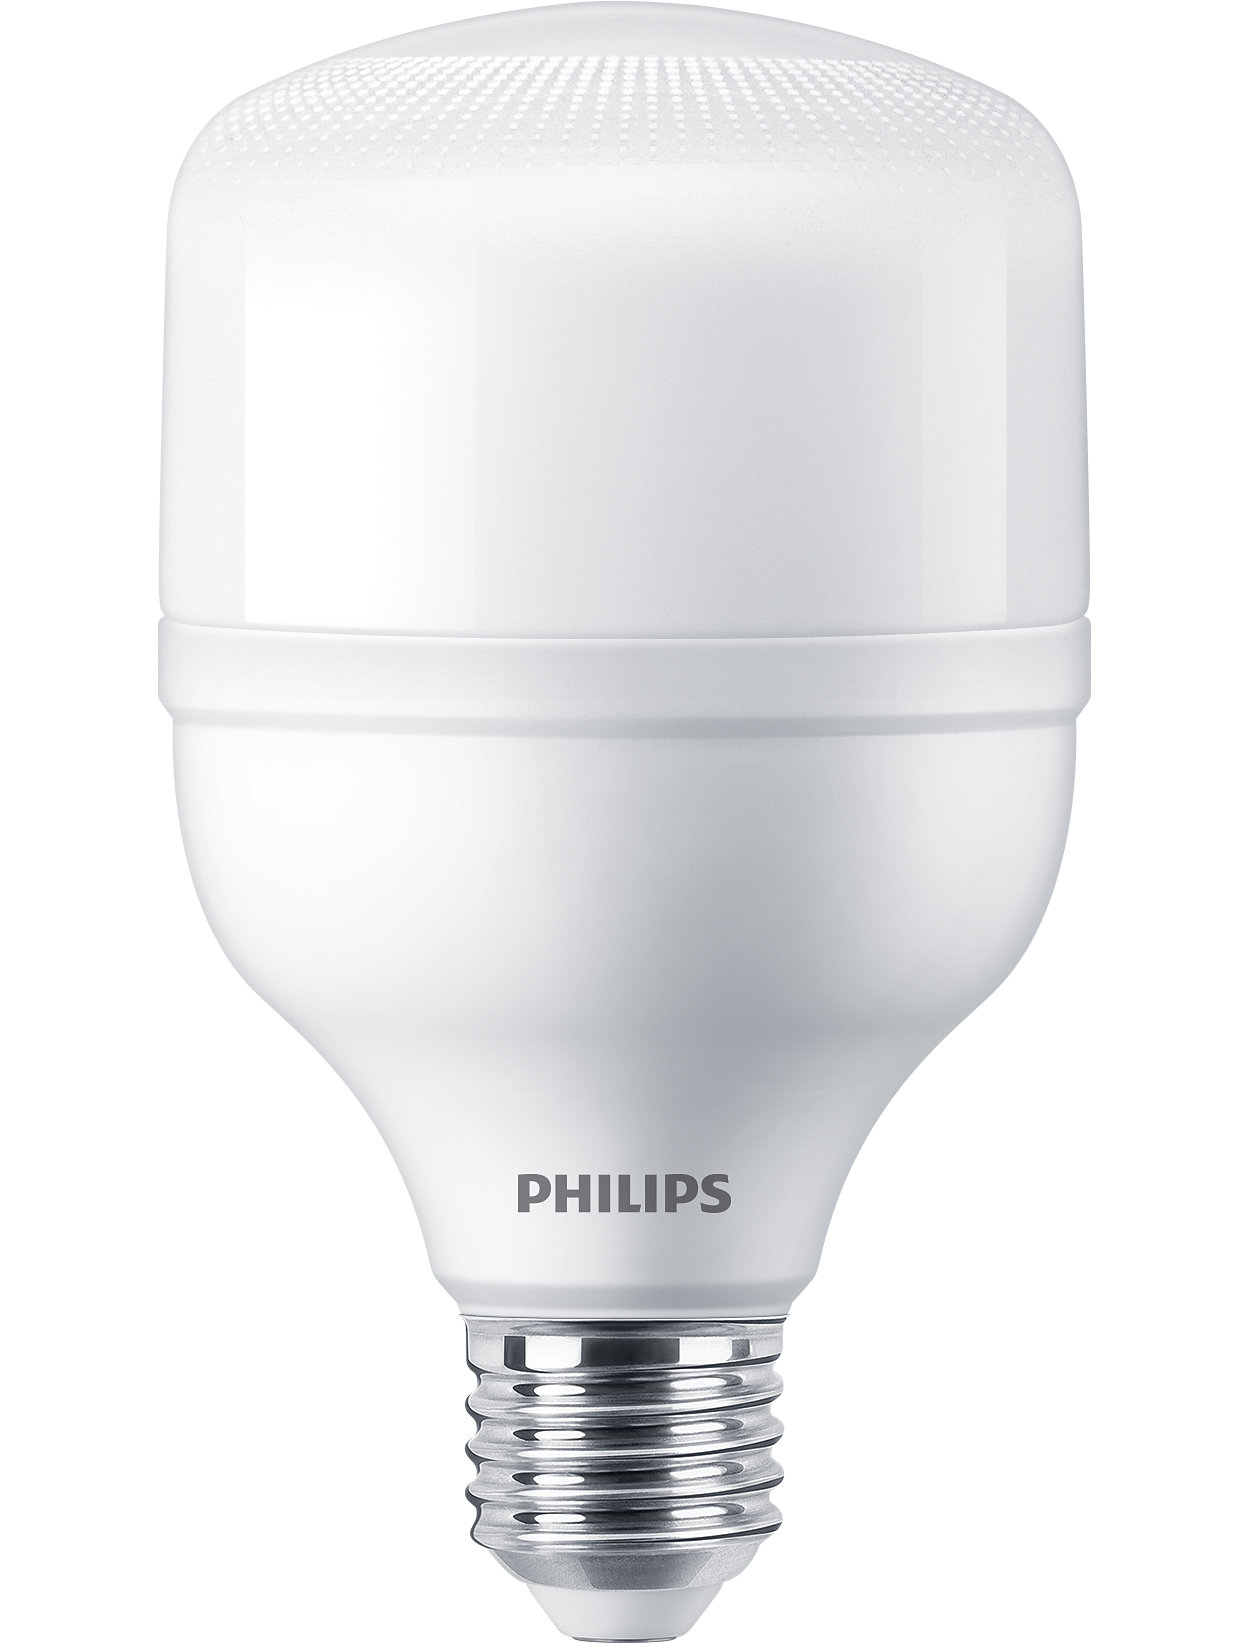 高强度气体放电 (HID) 灯的极佳 LED 替代解决方案